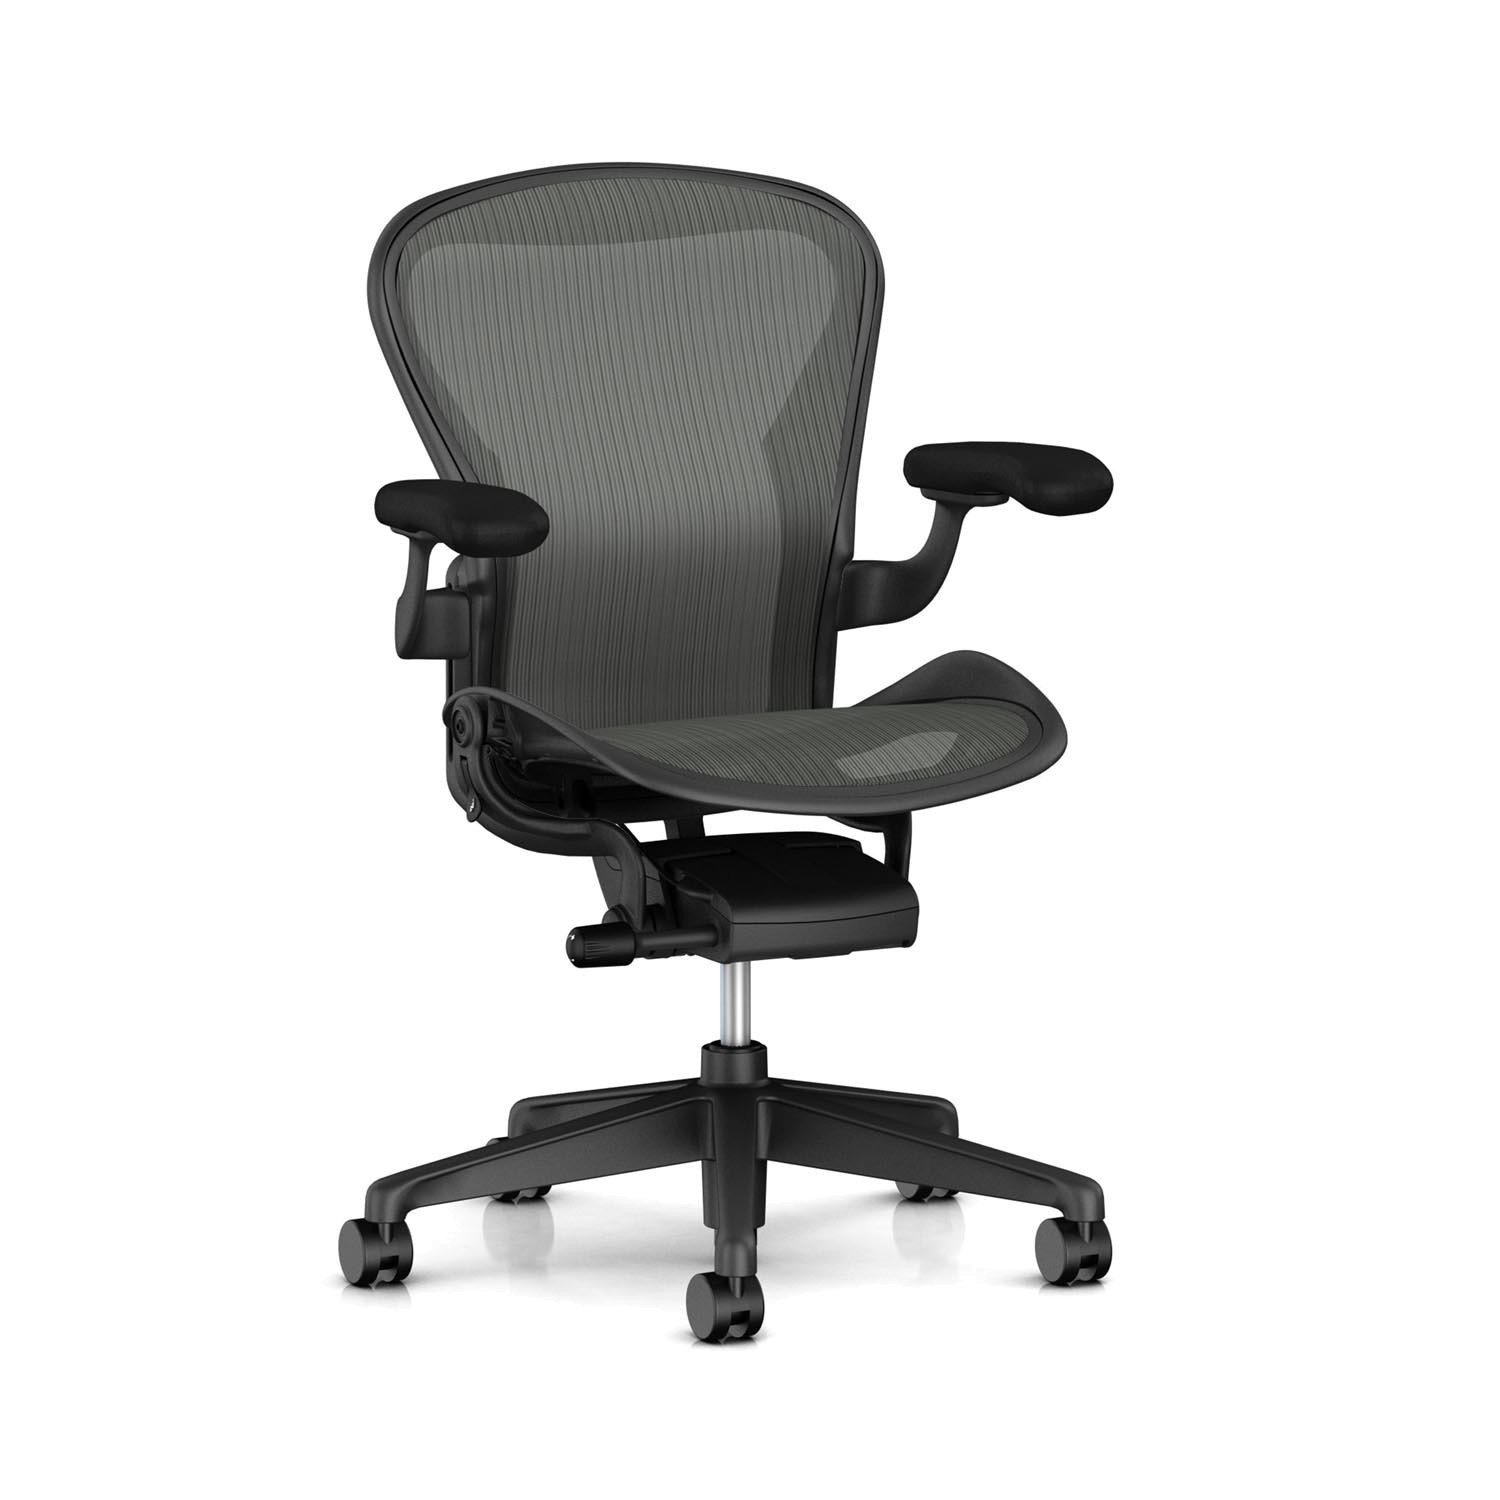 aeron-chair-p-szs-g1-g1g1-bk.jpg